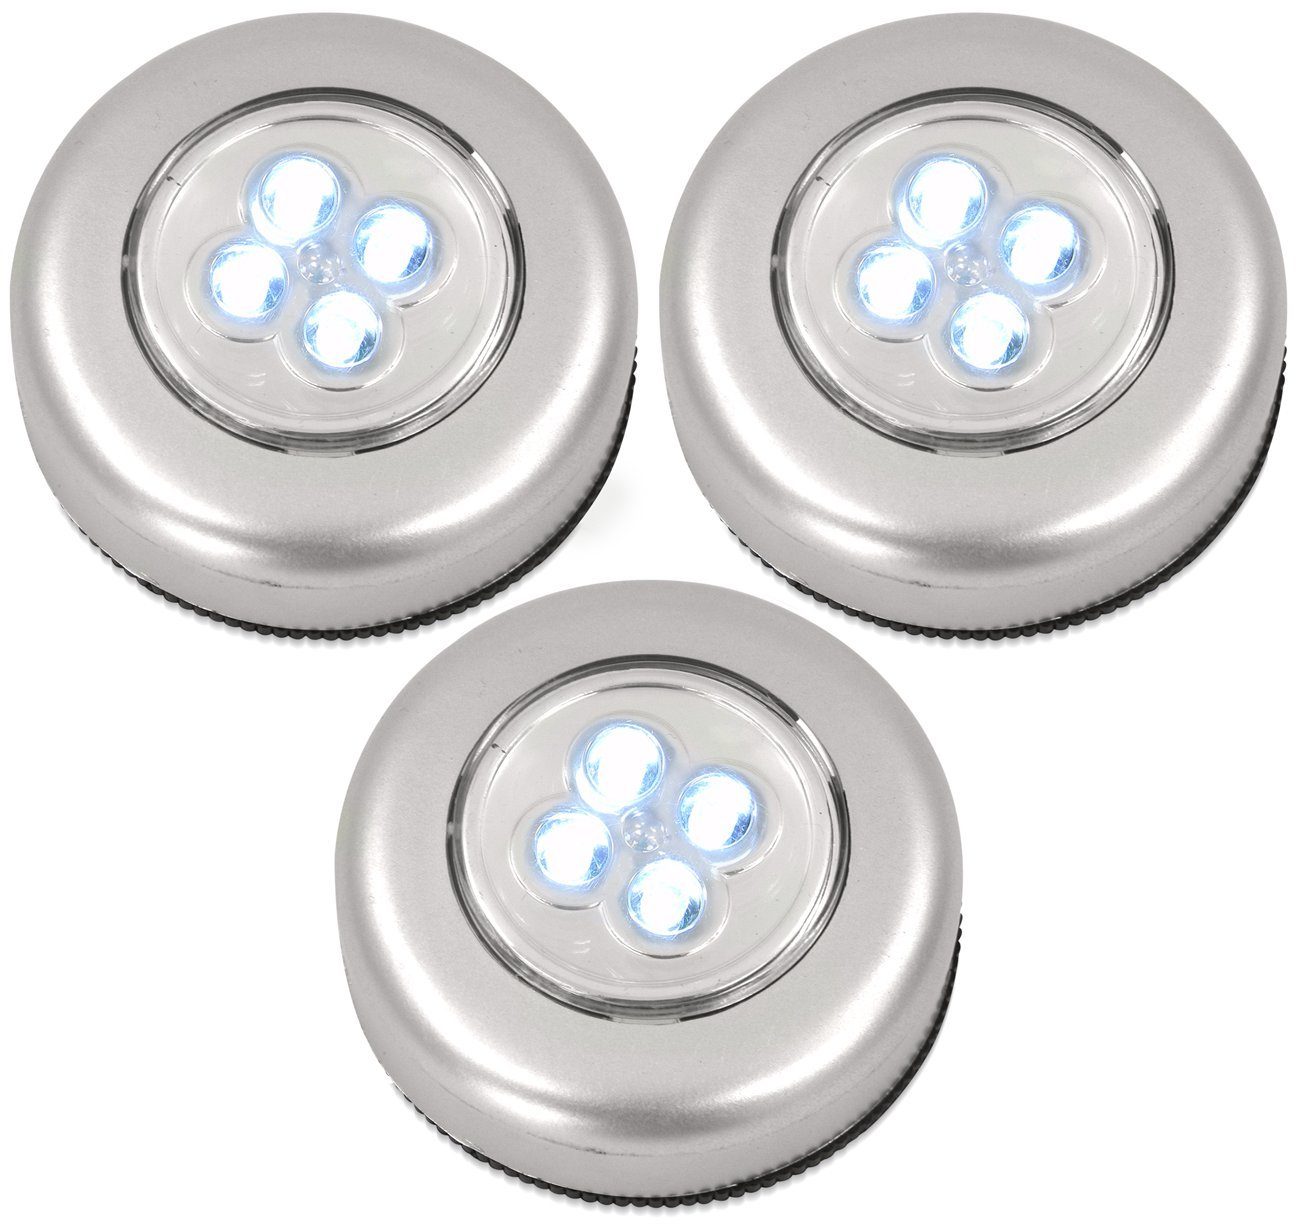 EAXUS Garage Selbstklebende LED Küche, & integriert, Touch LED Batteriebetrieben, für fest Schrankleuchte/Küchenunterbauleuchte, Co. Unterbauleuchte